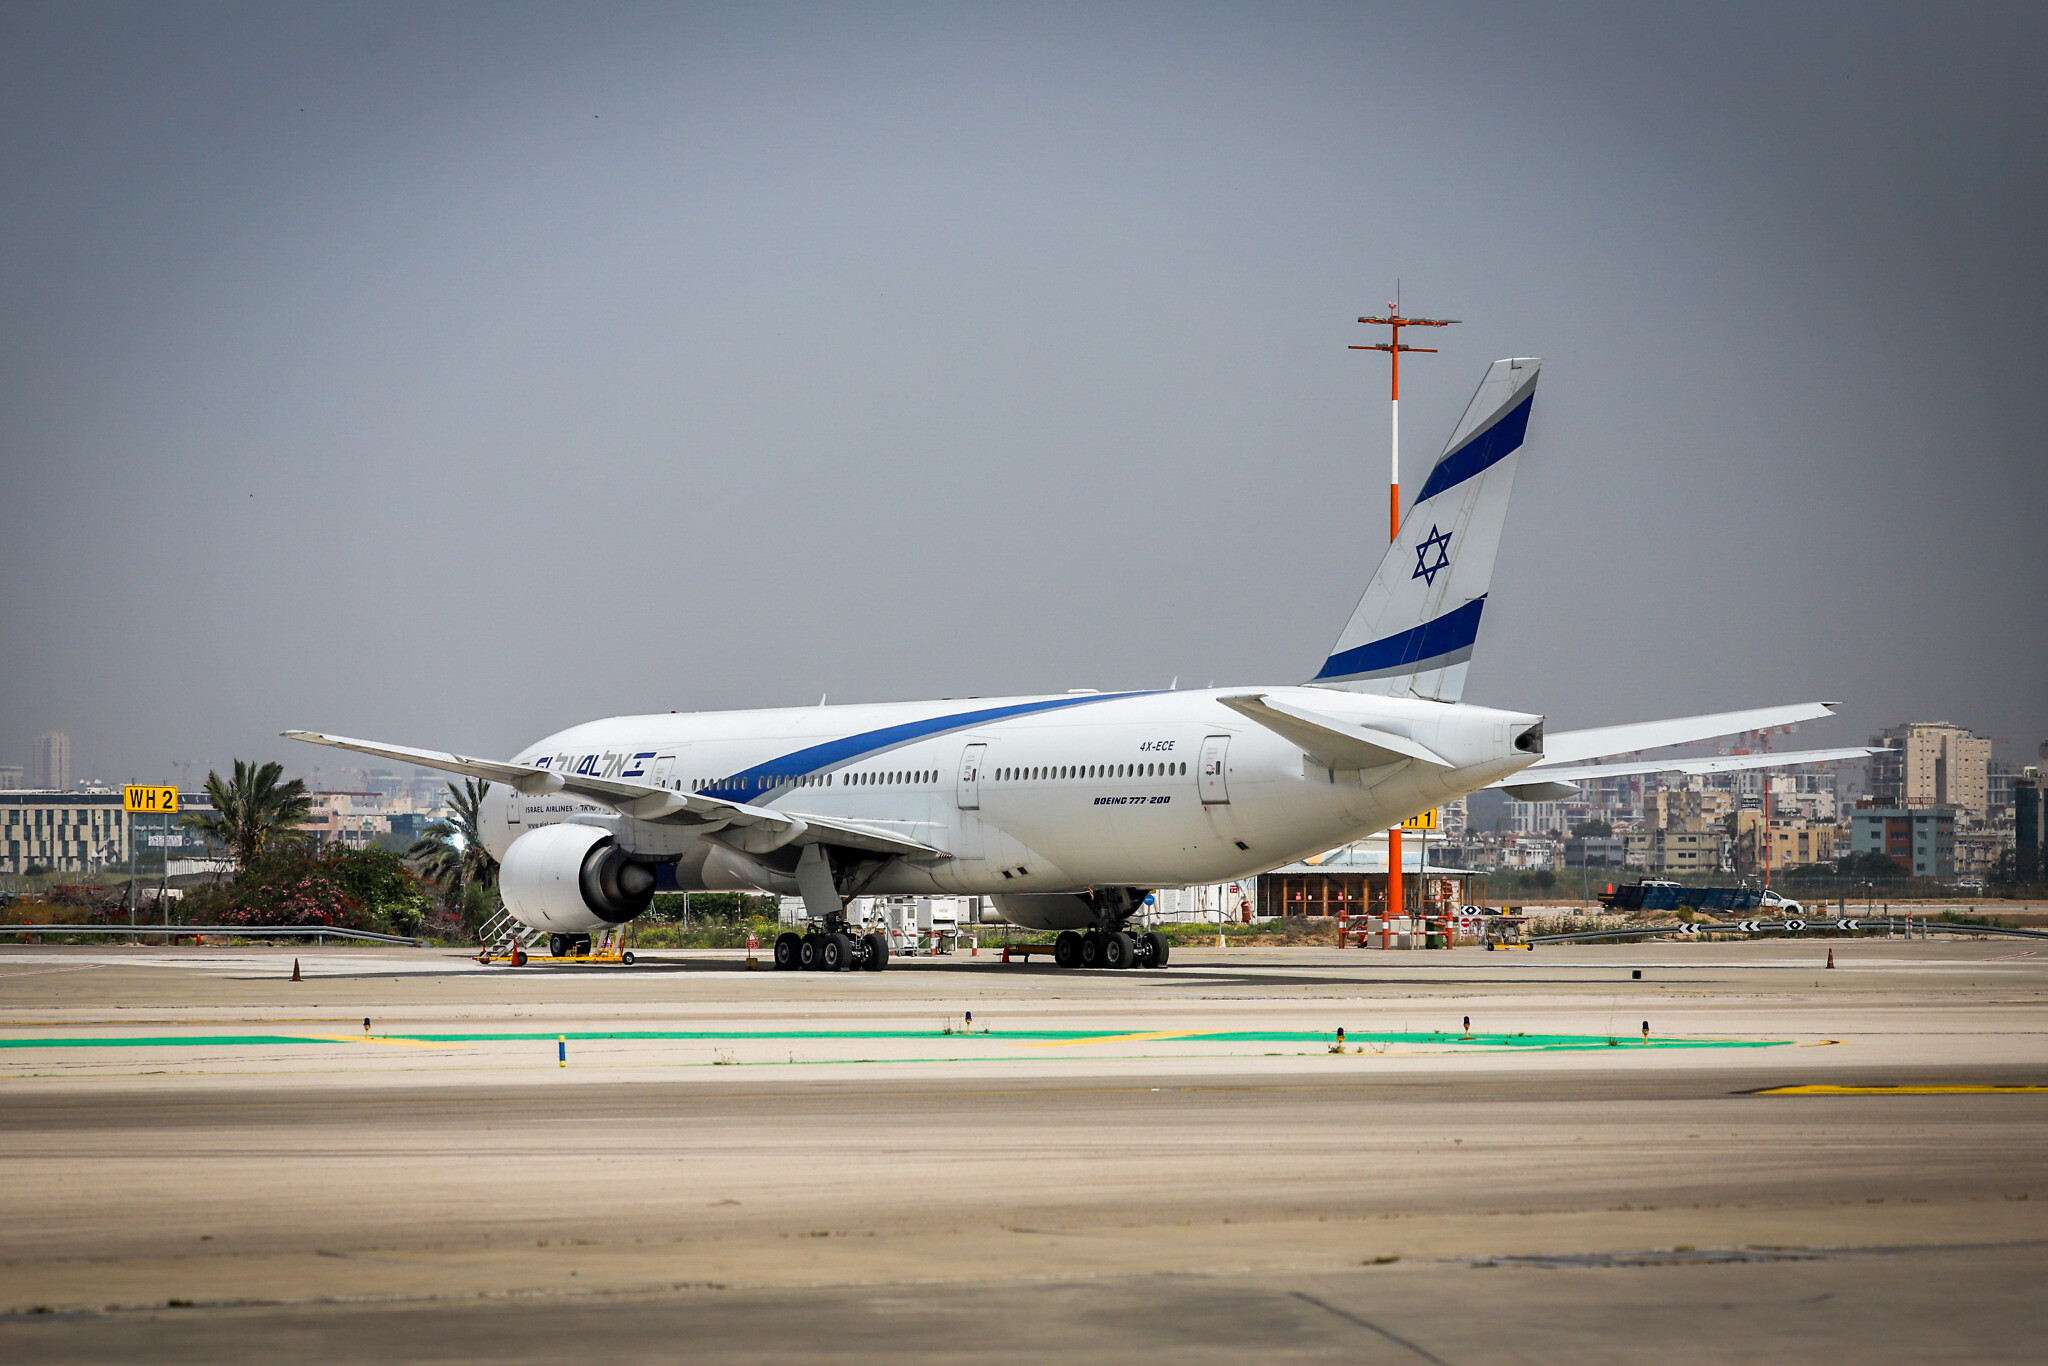 Авиабилеты в израиль цена эль аль сургут нижневартовск билеты самолет